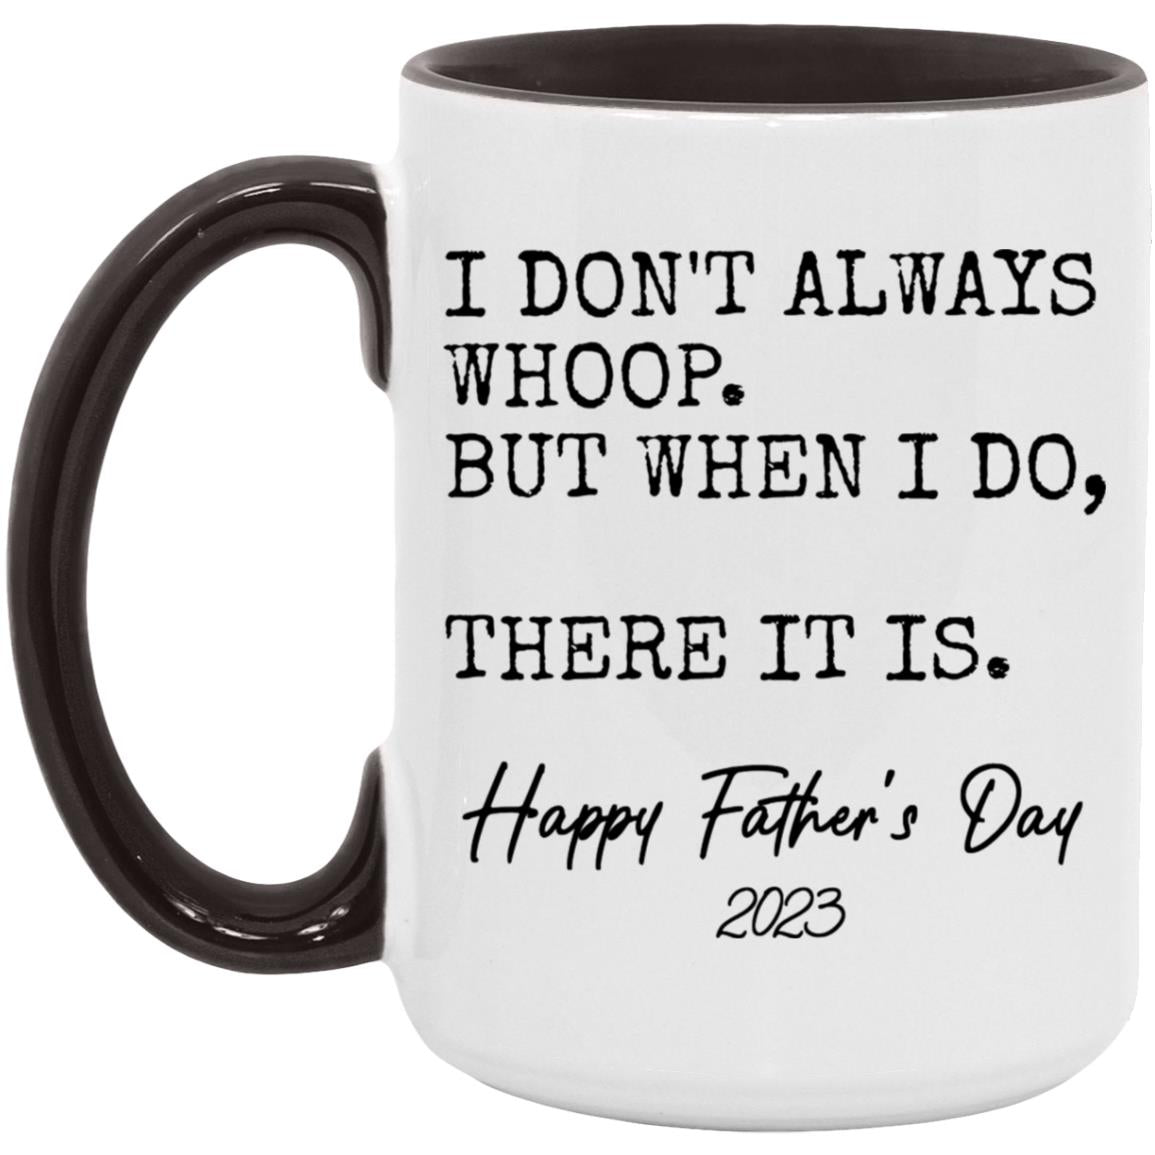 Father's Day 2023 Mug